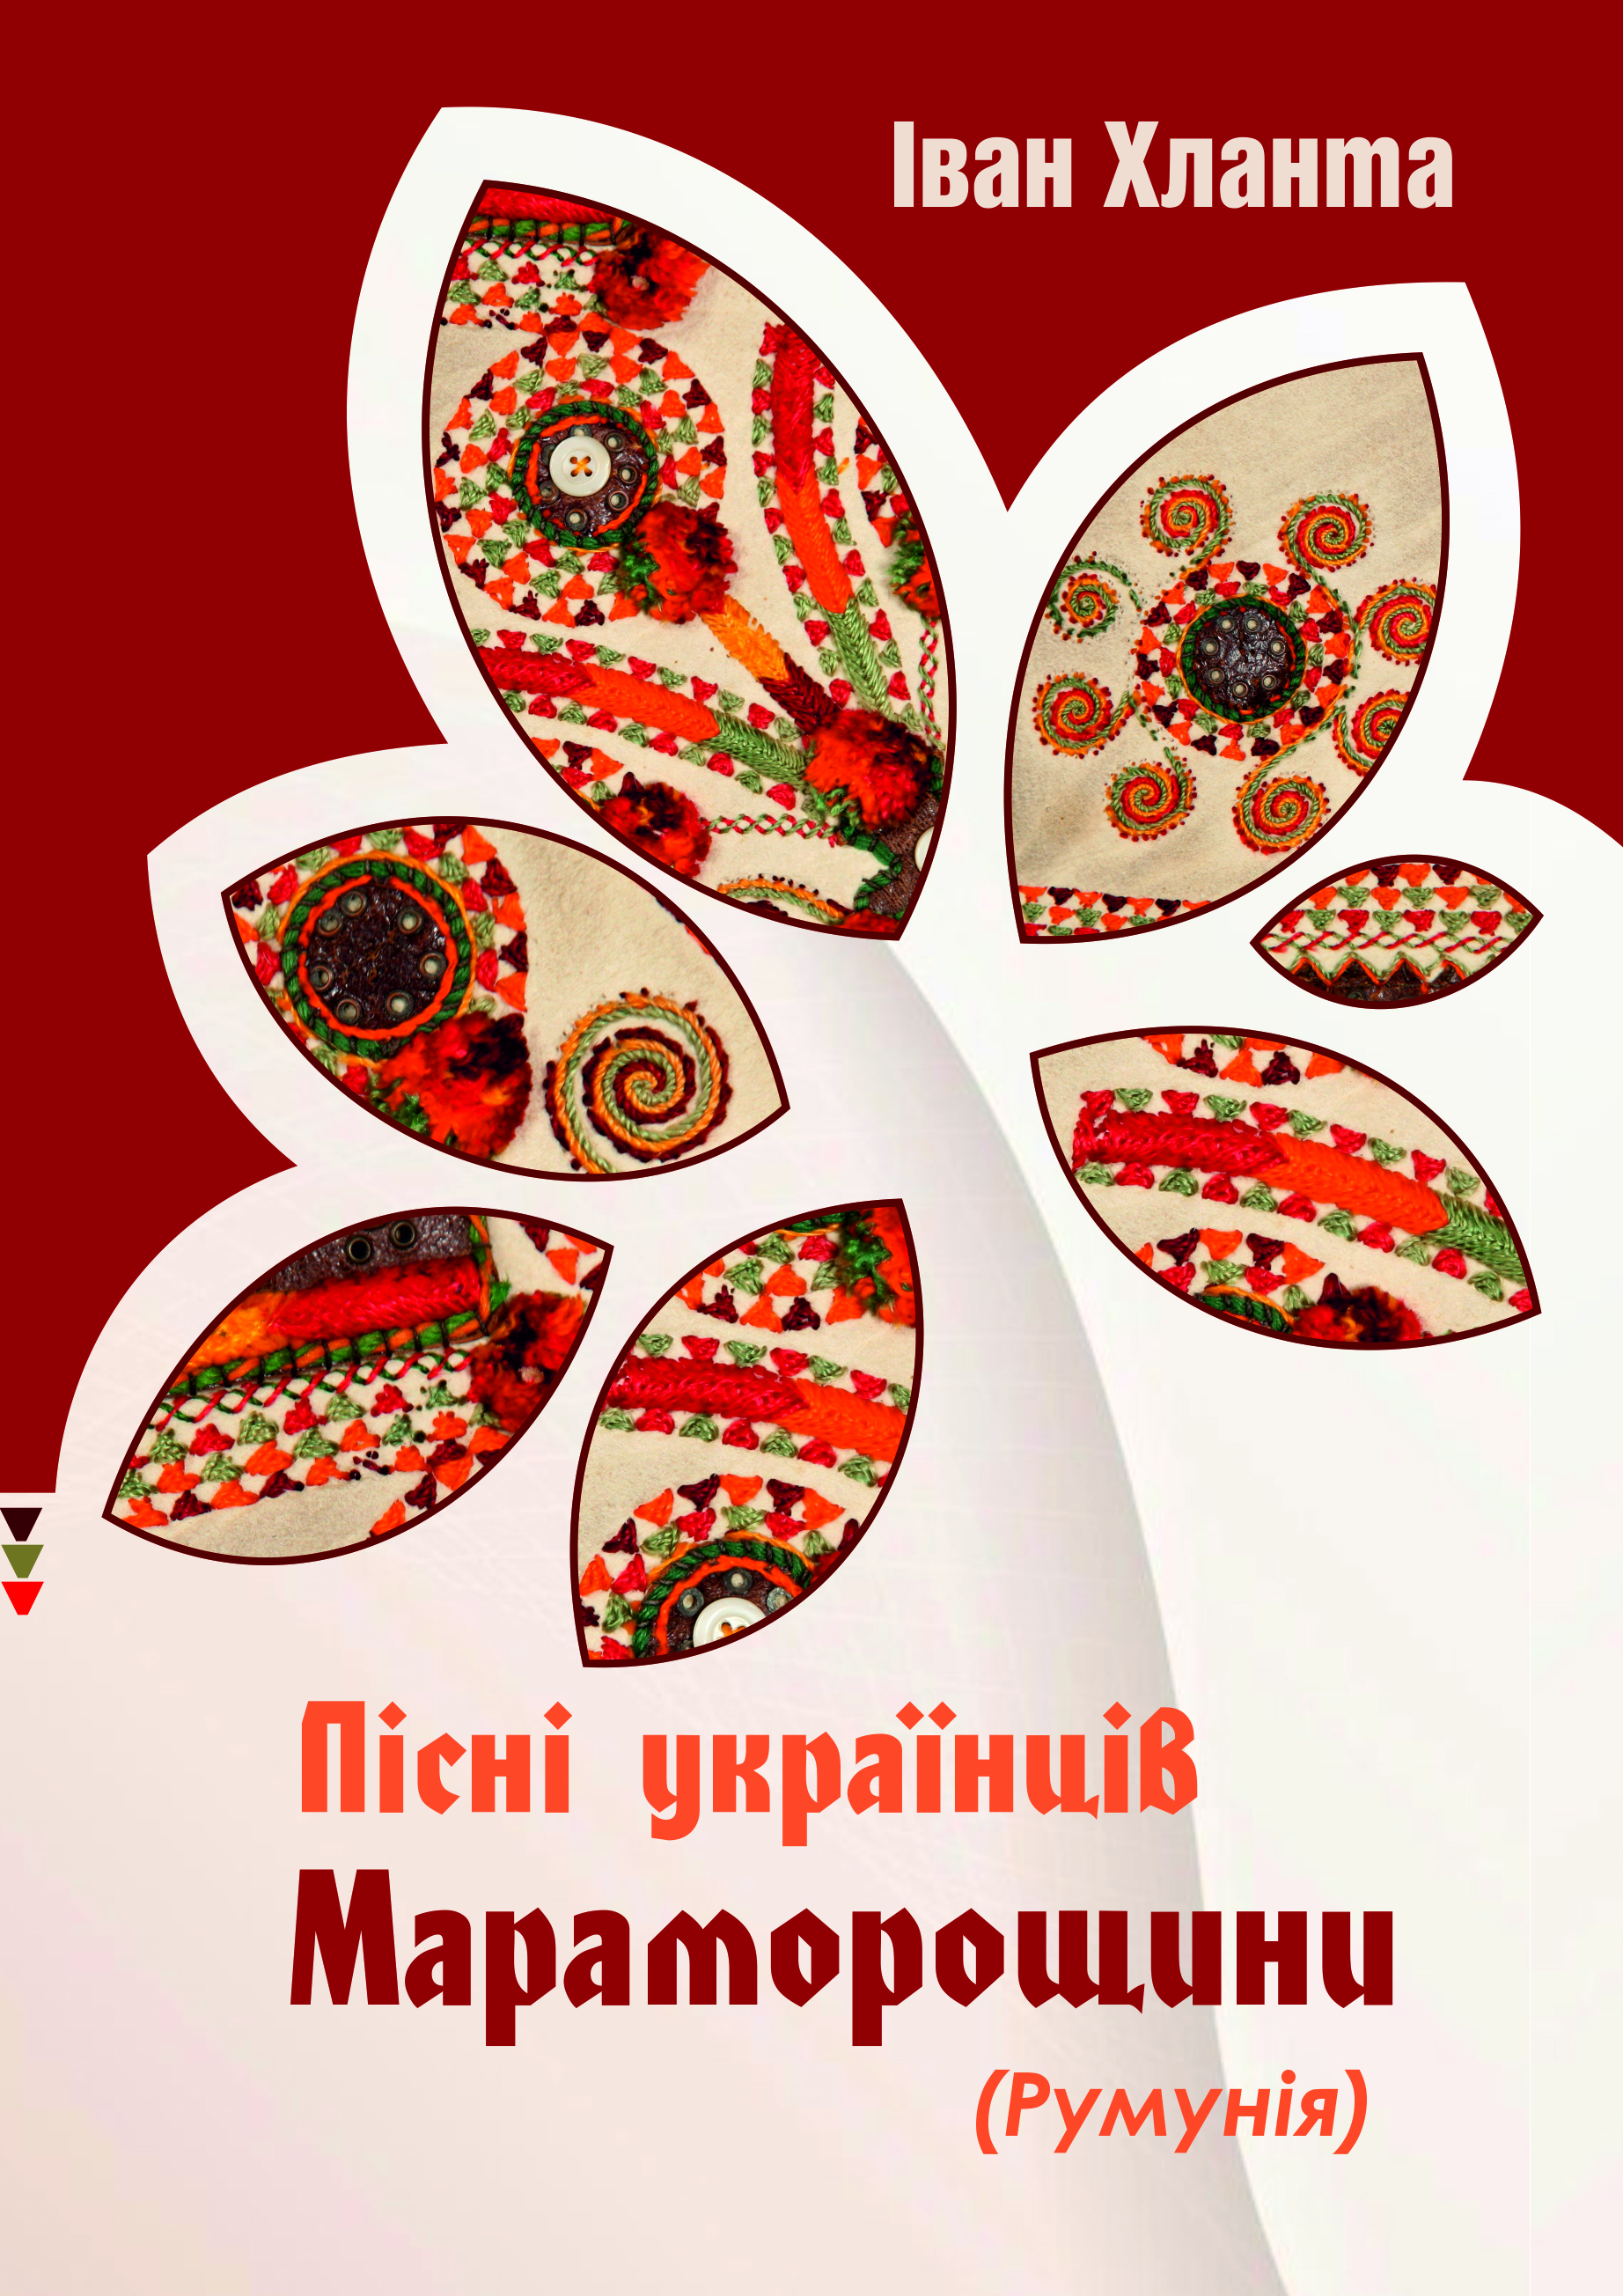 Збірник із народними піснями українців Мараморошу містить понад 850 сторінок